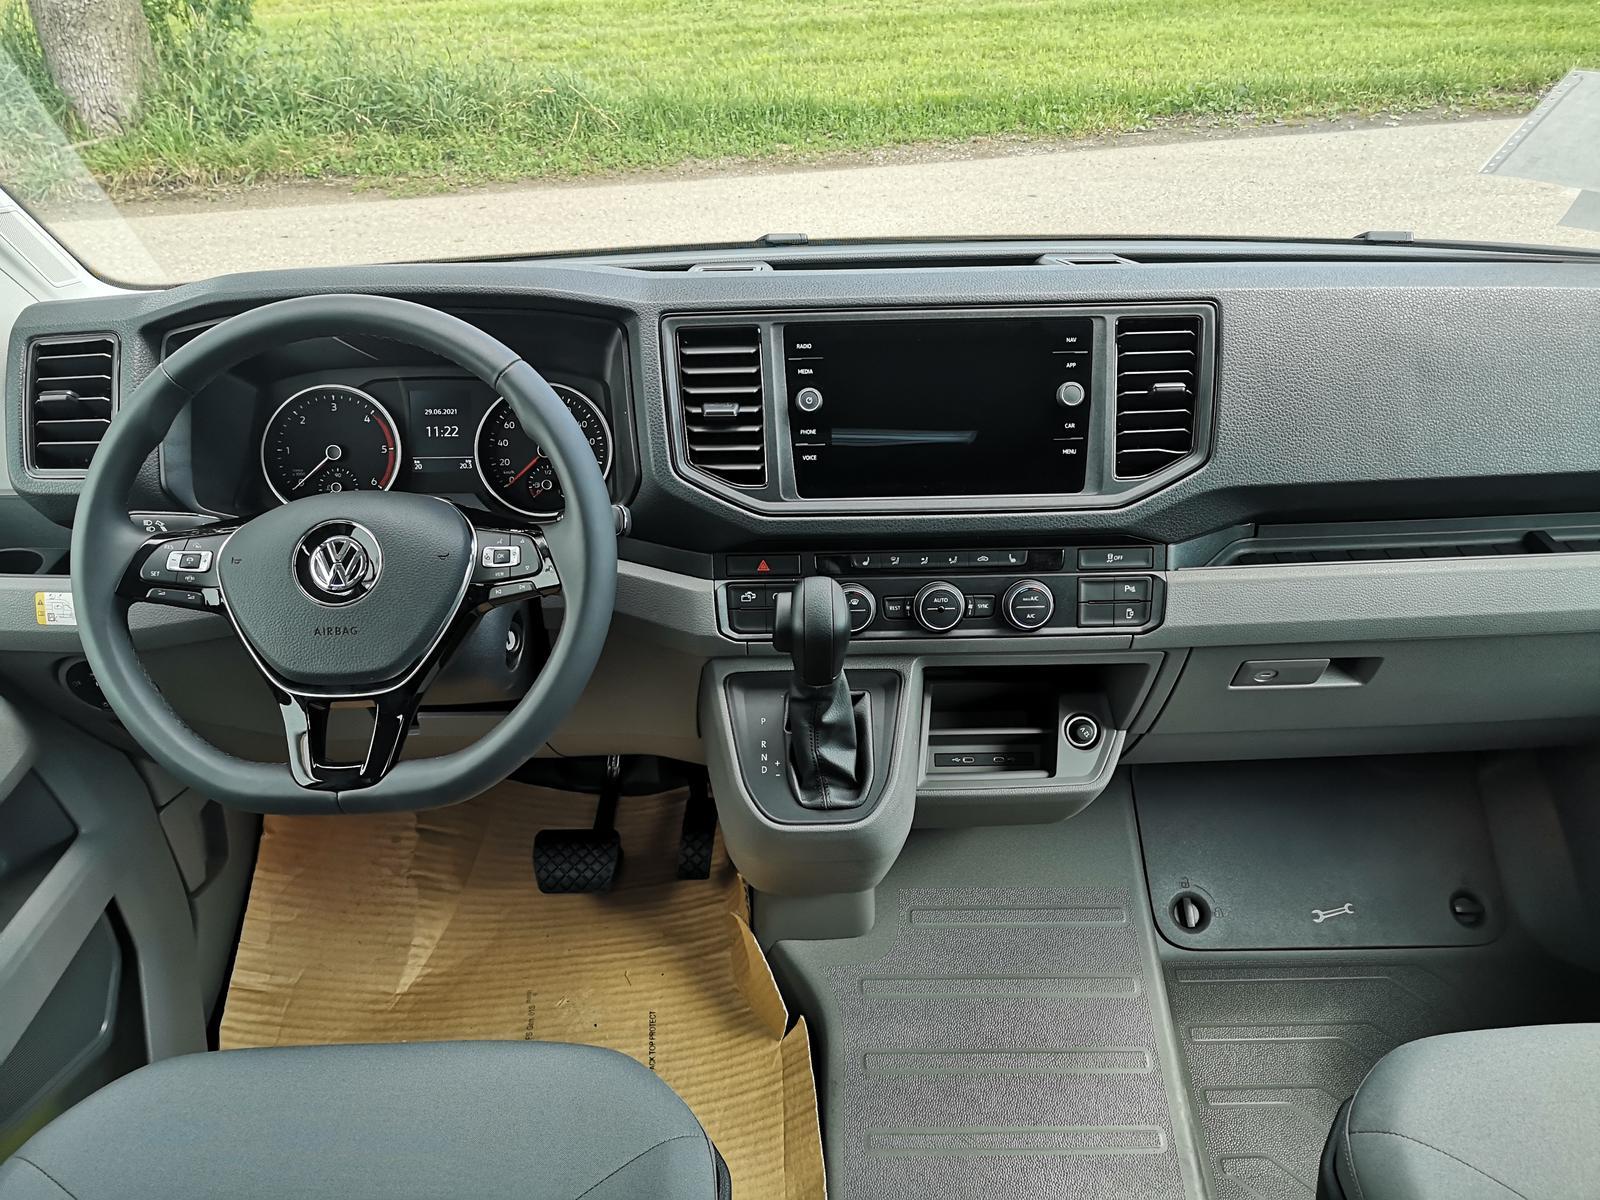 Volkswagen Grand California 2,0TDI 600 3.5T UPE 96.950 ?  Fahrzeugangebot  zu europäischen Bestpreisen mit Rabatt, günstiger kaufen